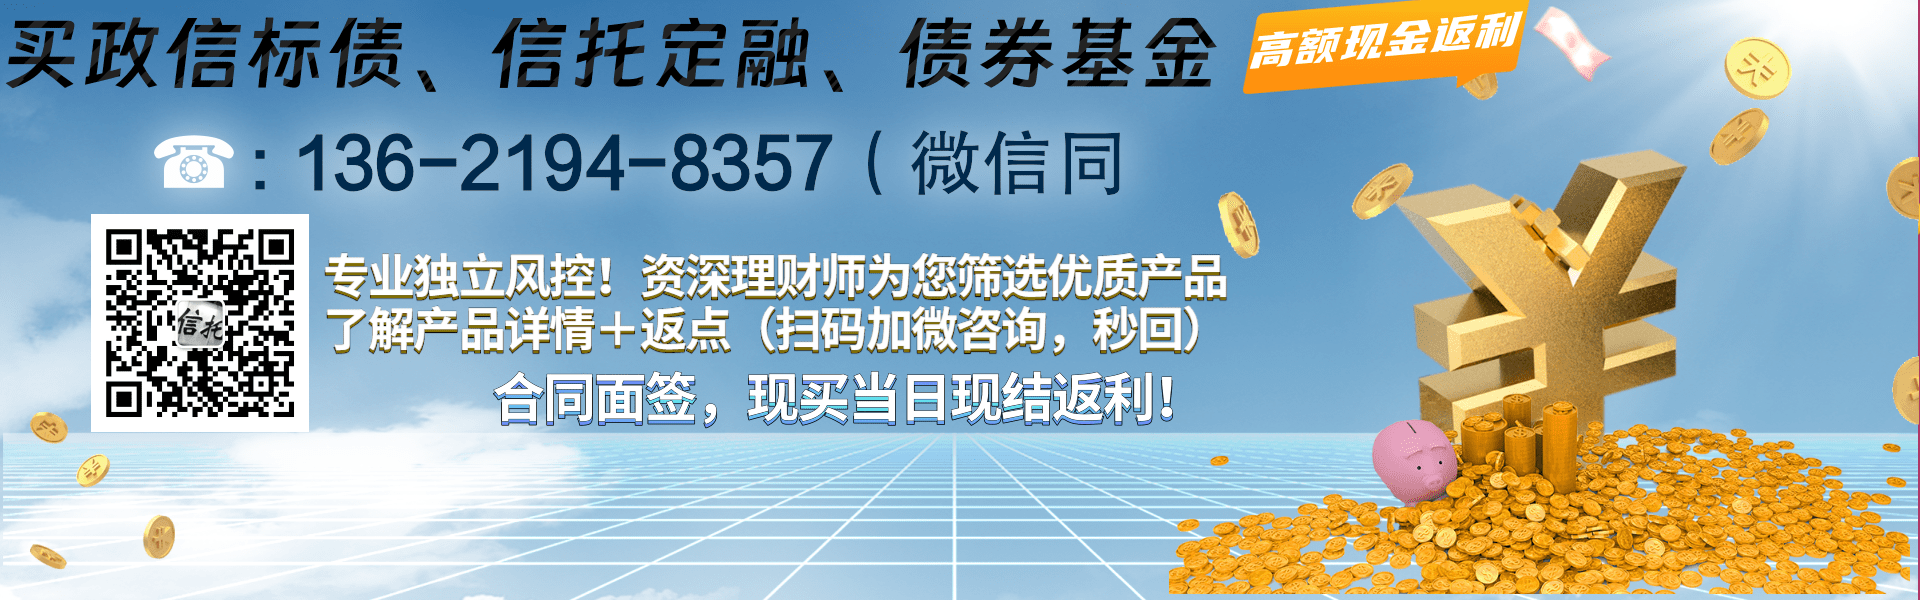 国企信托—重庆三峡标债